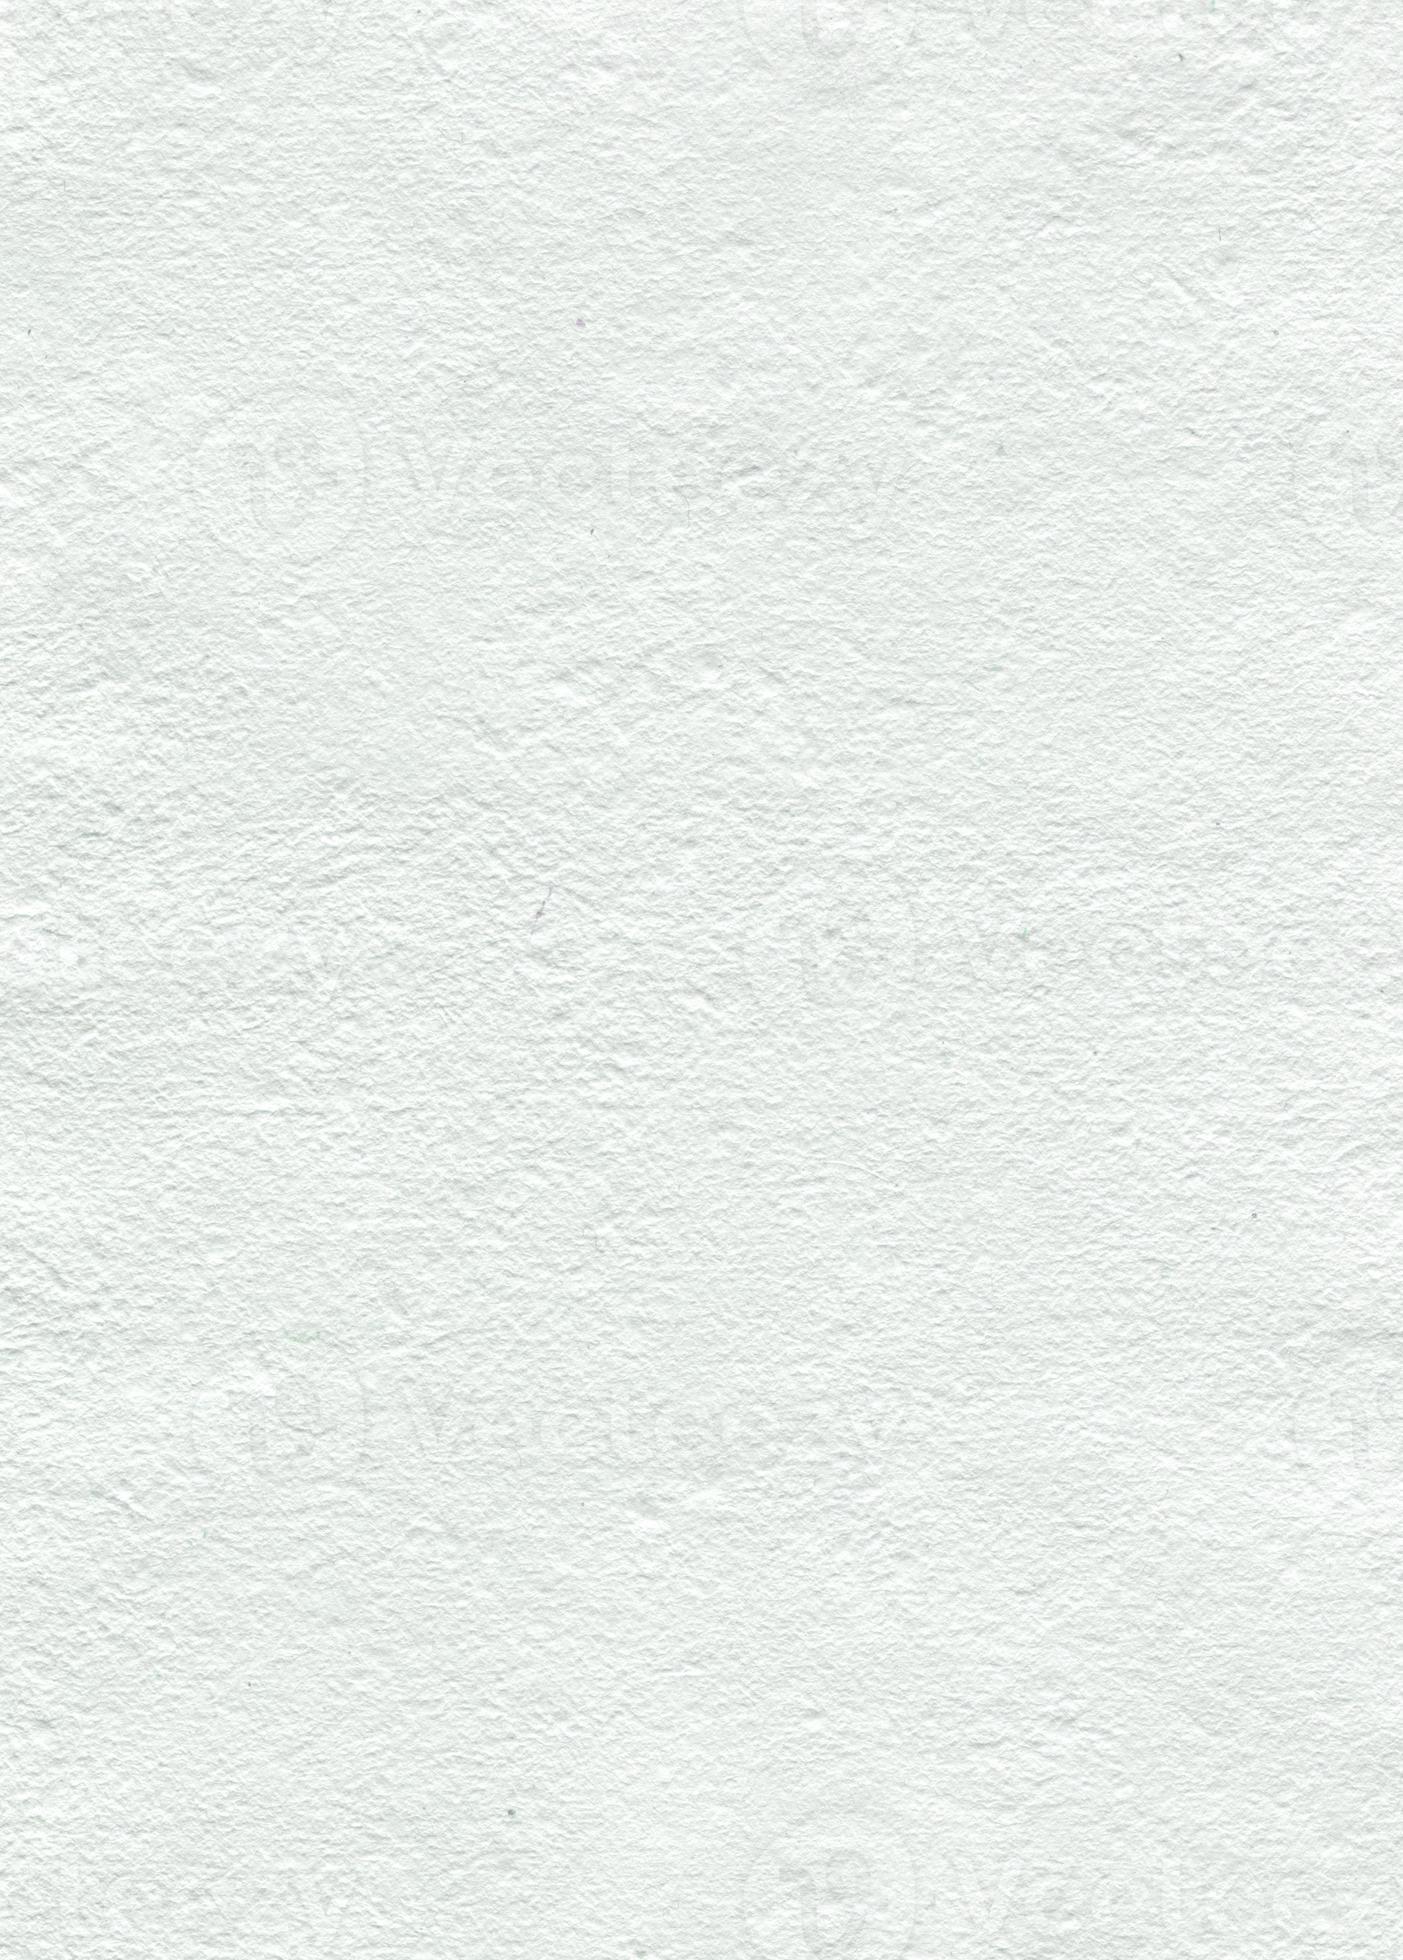 Textura única De Superficie De Corcho Blanco Suave Imagen de archivo -  Imagen de blanco, superficie: 232160139